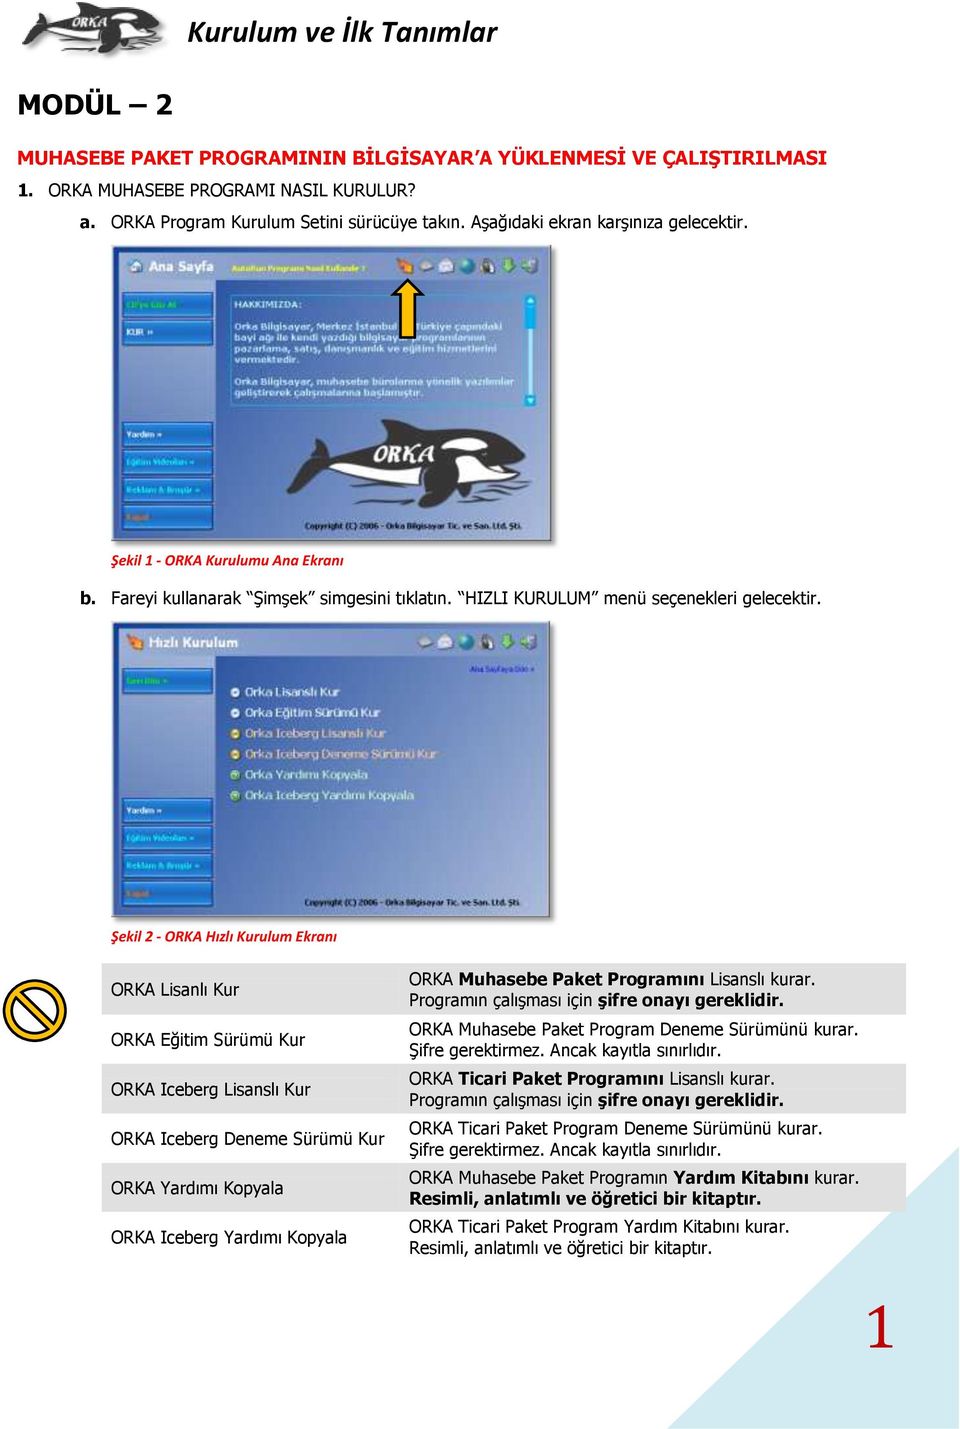 Şekil 2 - ORKA Hızlı Kurulum Ekranı ORKA Lisanlı Kur ORKA Eğitim Sürümü Kur ORKA Iceberg Lisanslı Kur ORKA Iceberg Deneme Sürümü Kur ORKA Yardımı Kopyala ORKA Iceberg Yardımı Kopyala ORKA Muhasebe